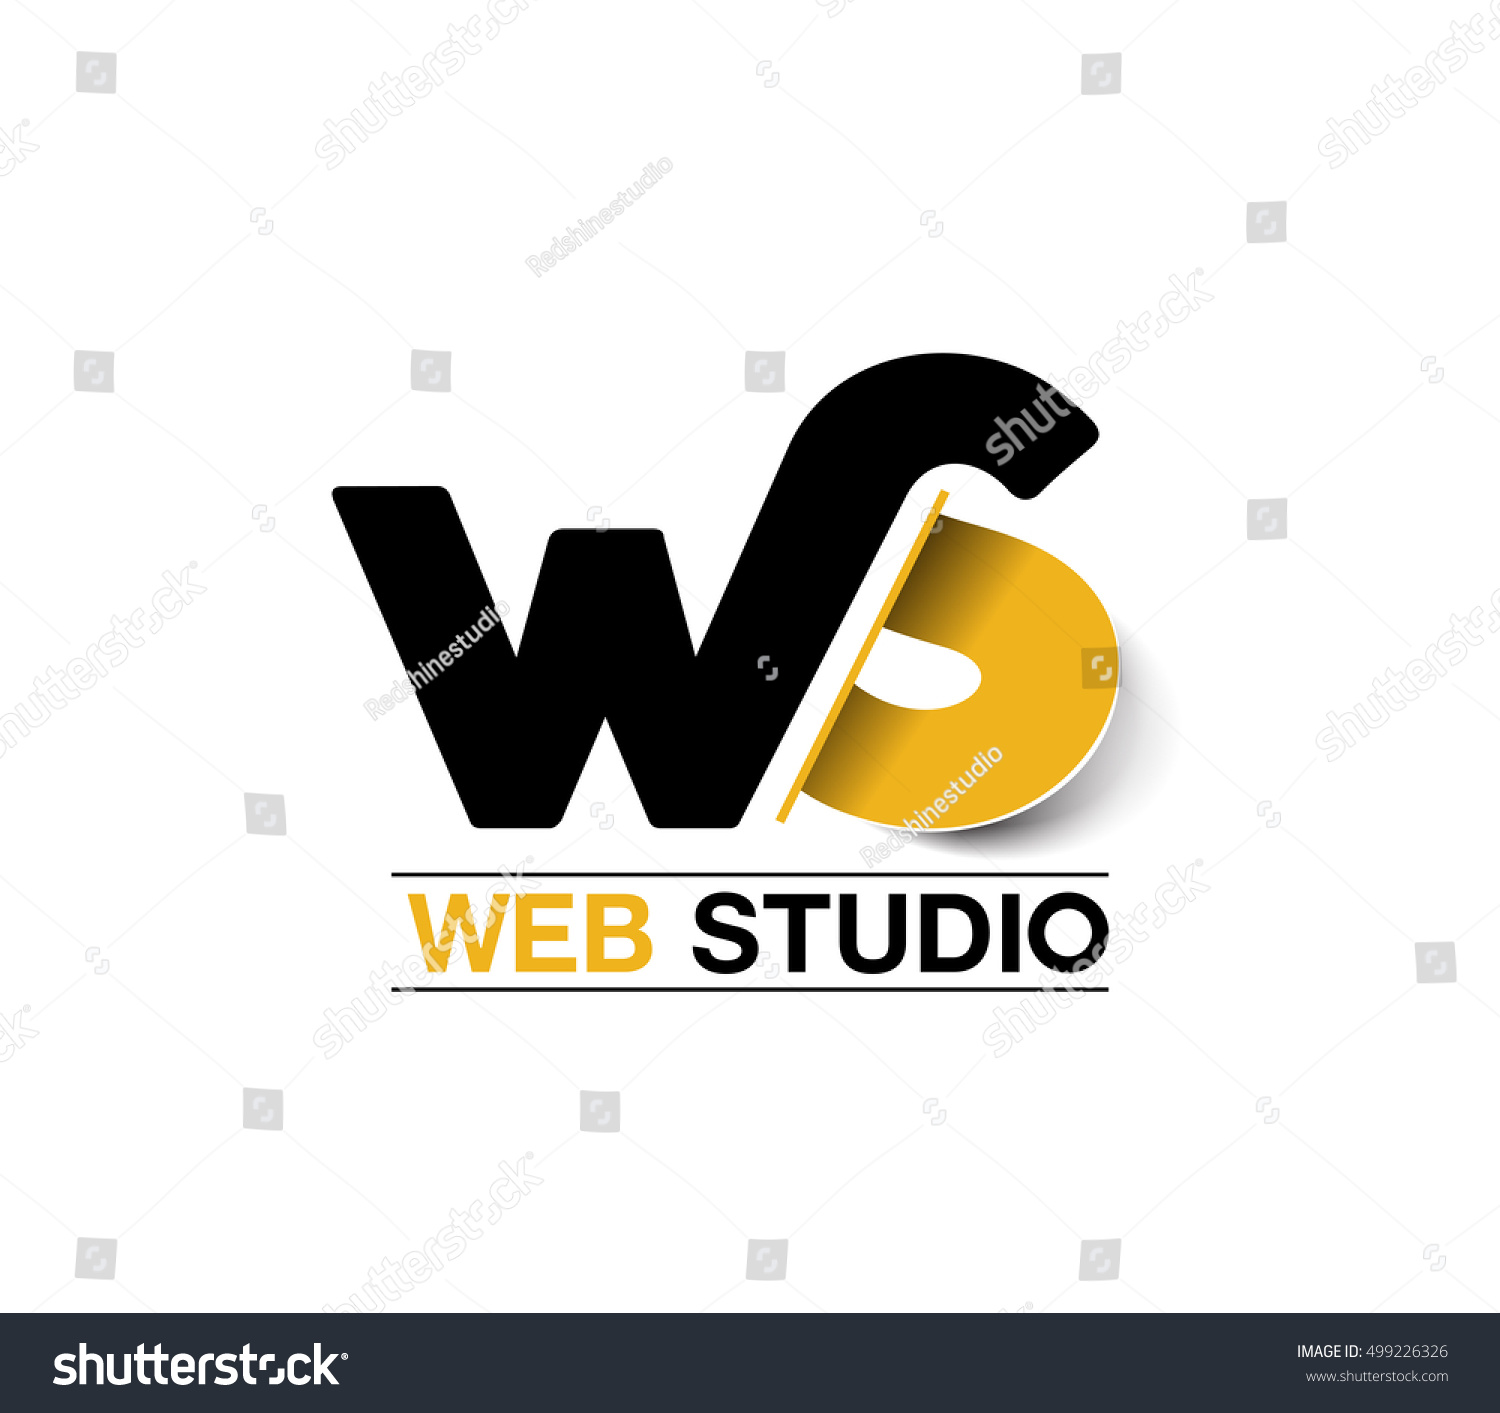 Ws web